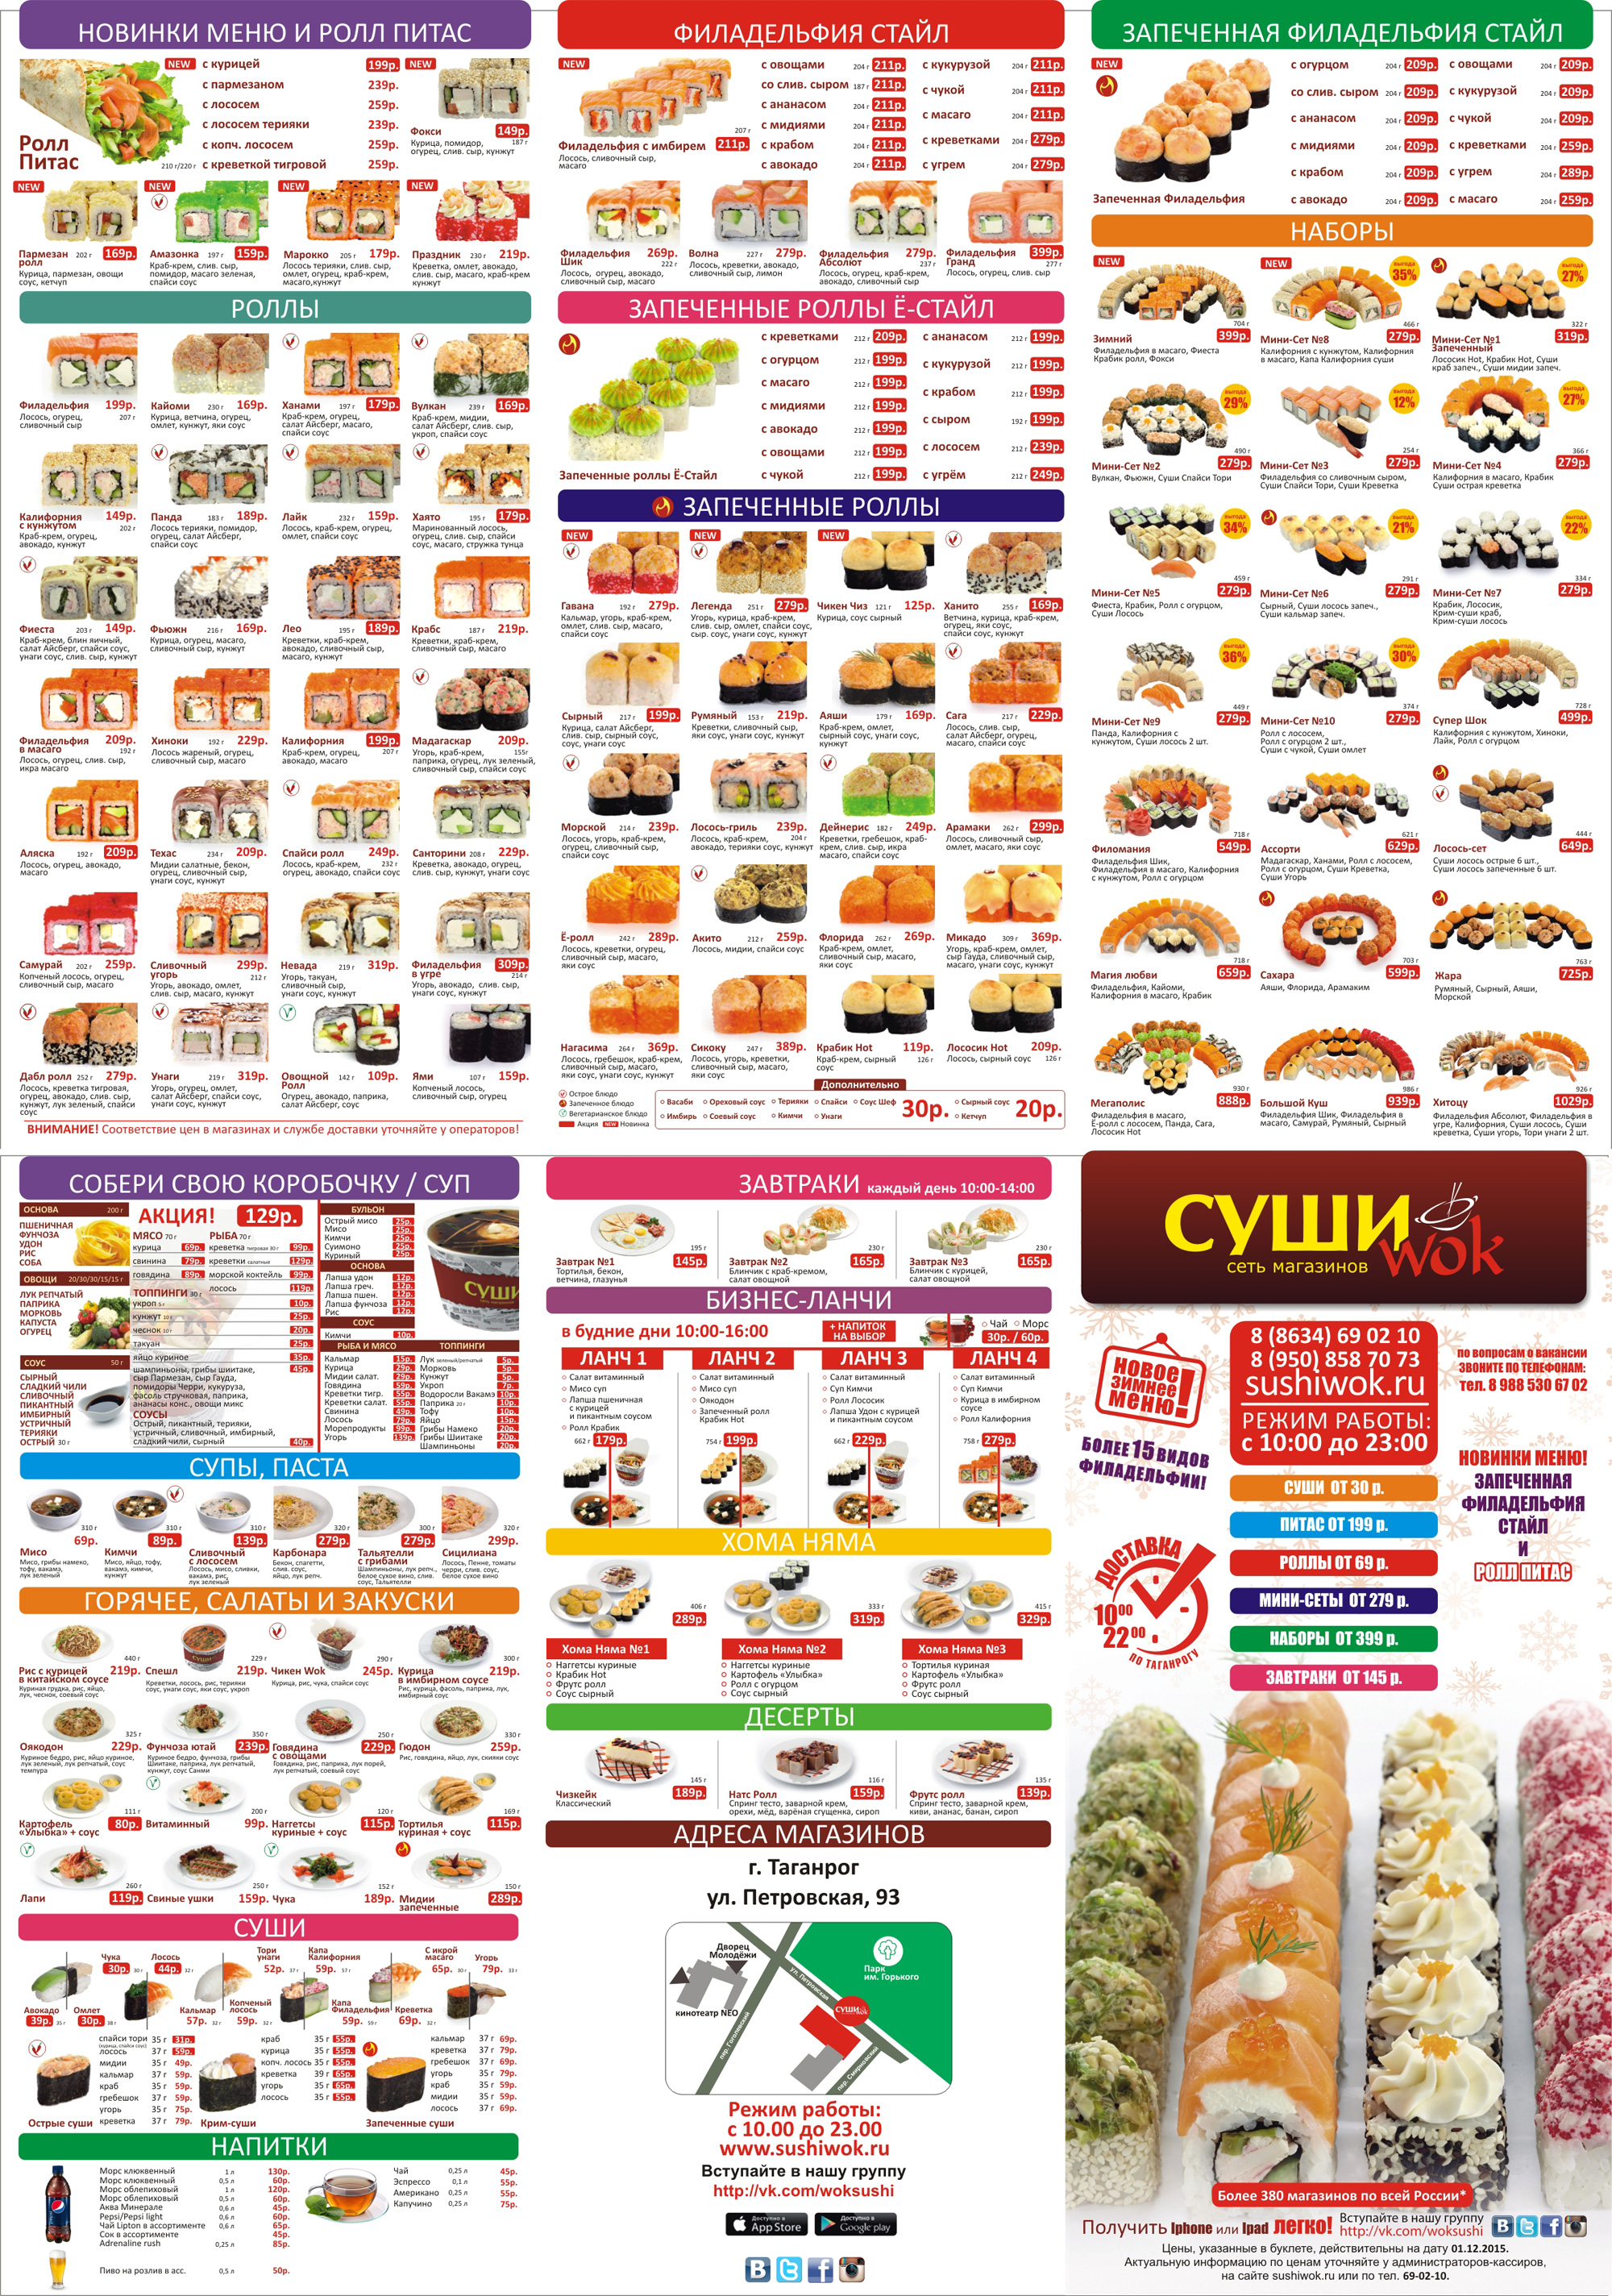 Суши вок меню санкт петербург цены наборы (120) фото